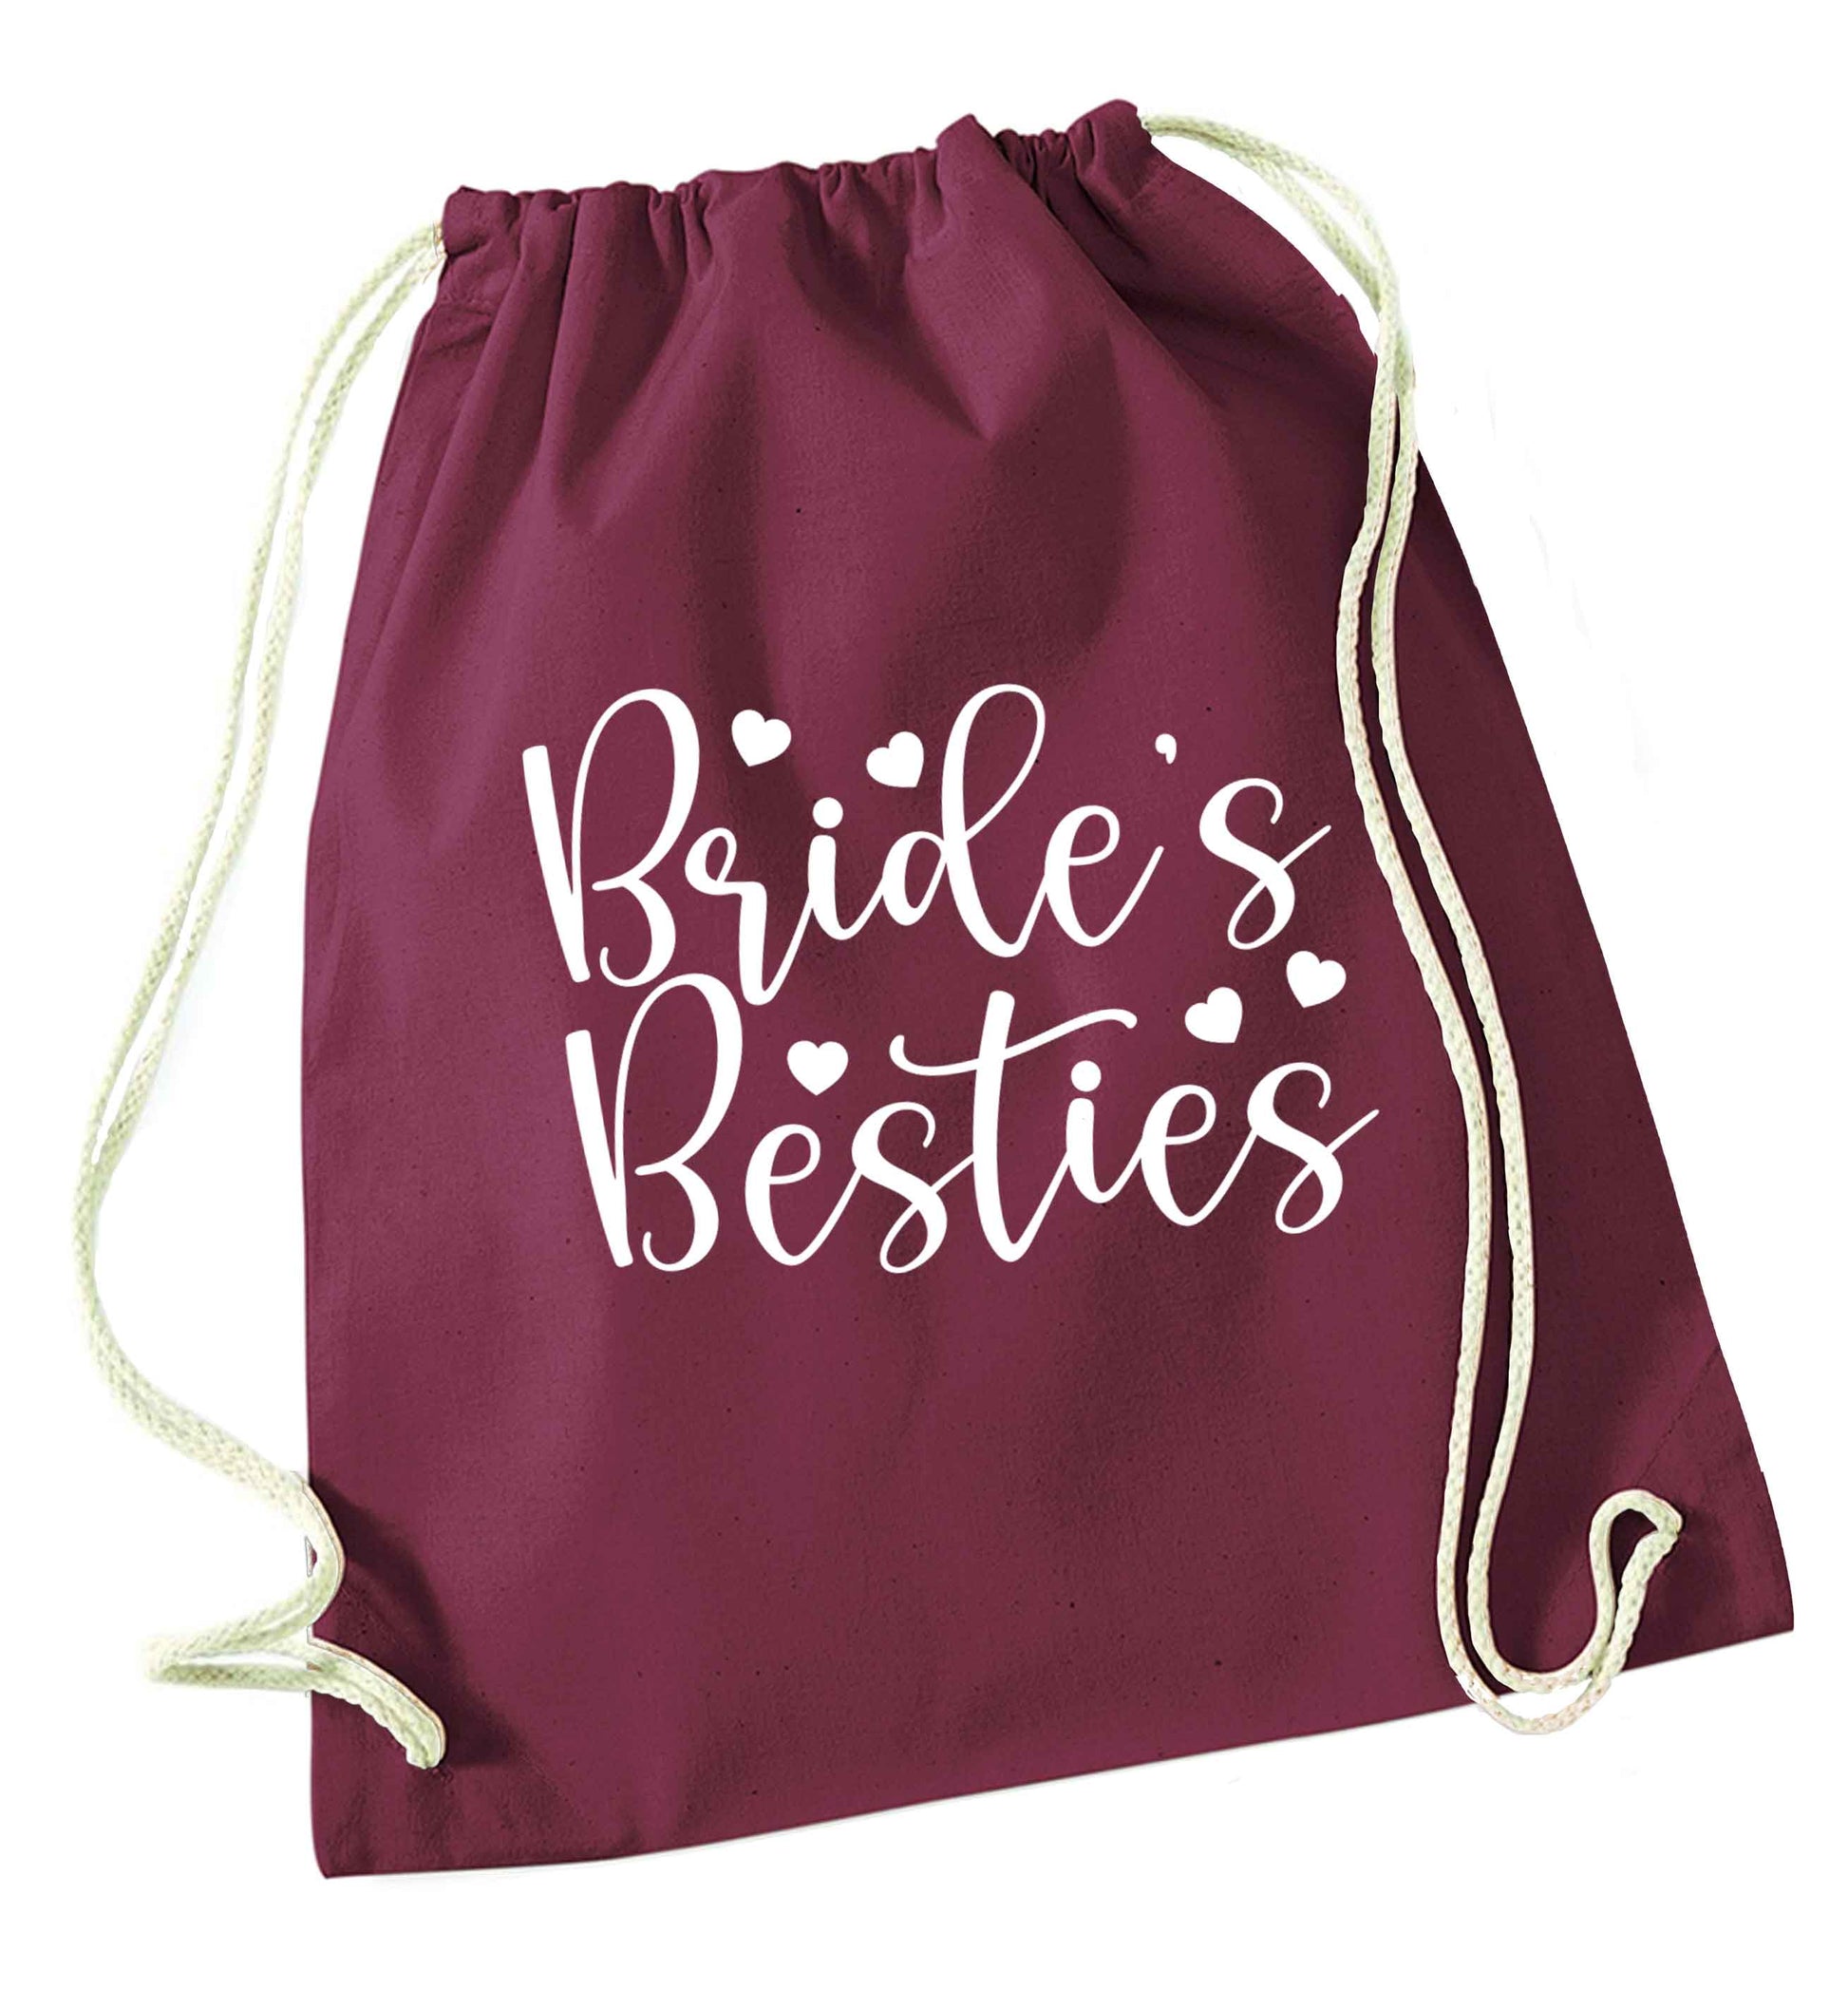 Brides besties maroon drawstring bag